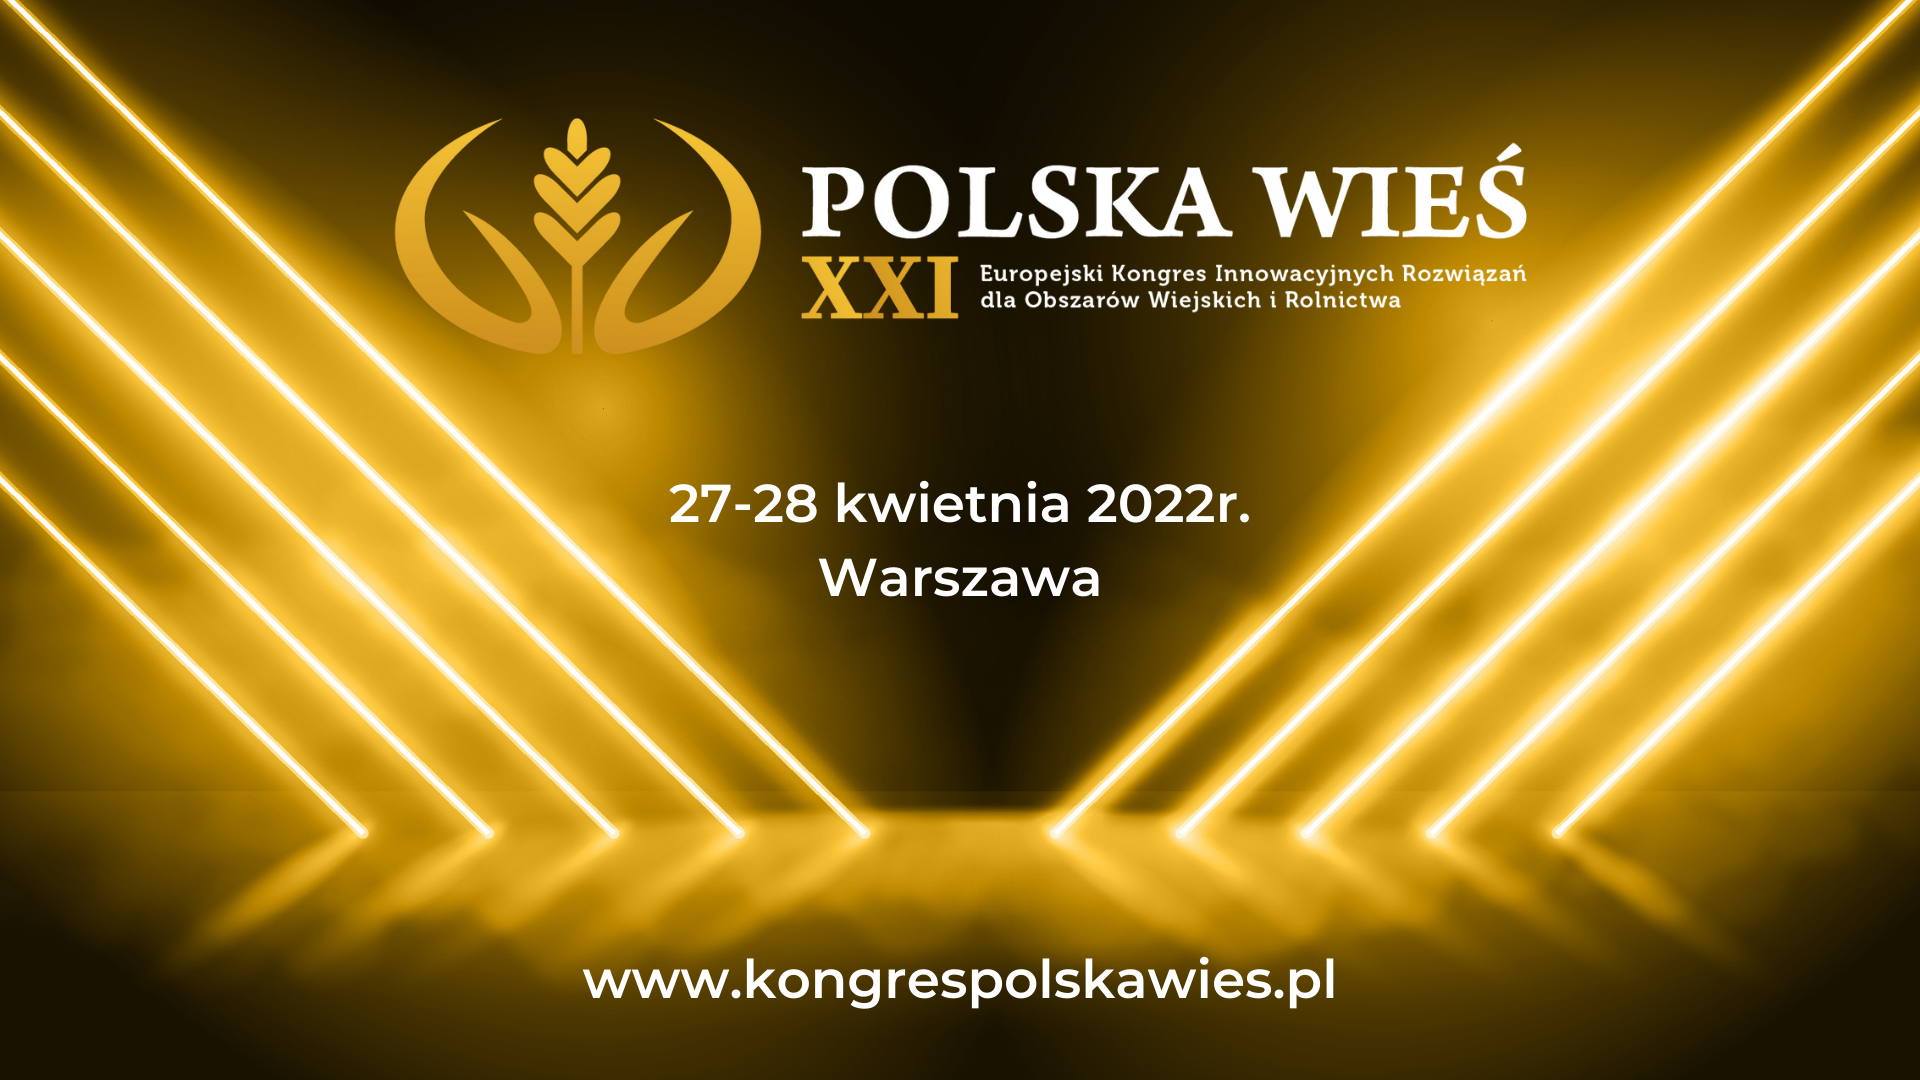 Polska Wieś XXI - Europejski Kongres Innowacyjnych Rozwiązań dla Obszarów Wiejskich i Rolnictwa, 27-28 kwietnia br.